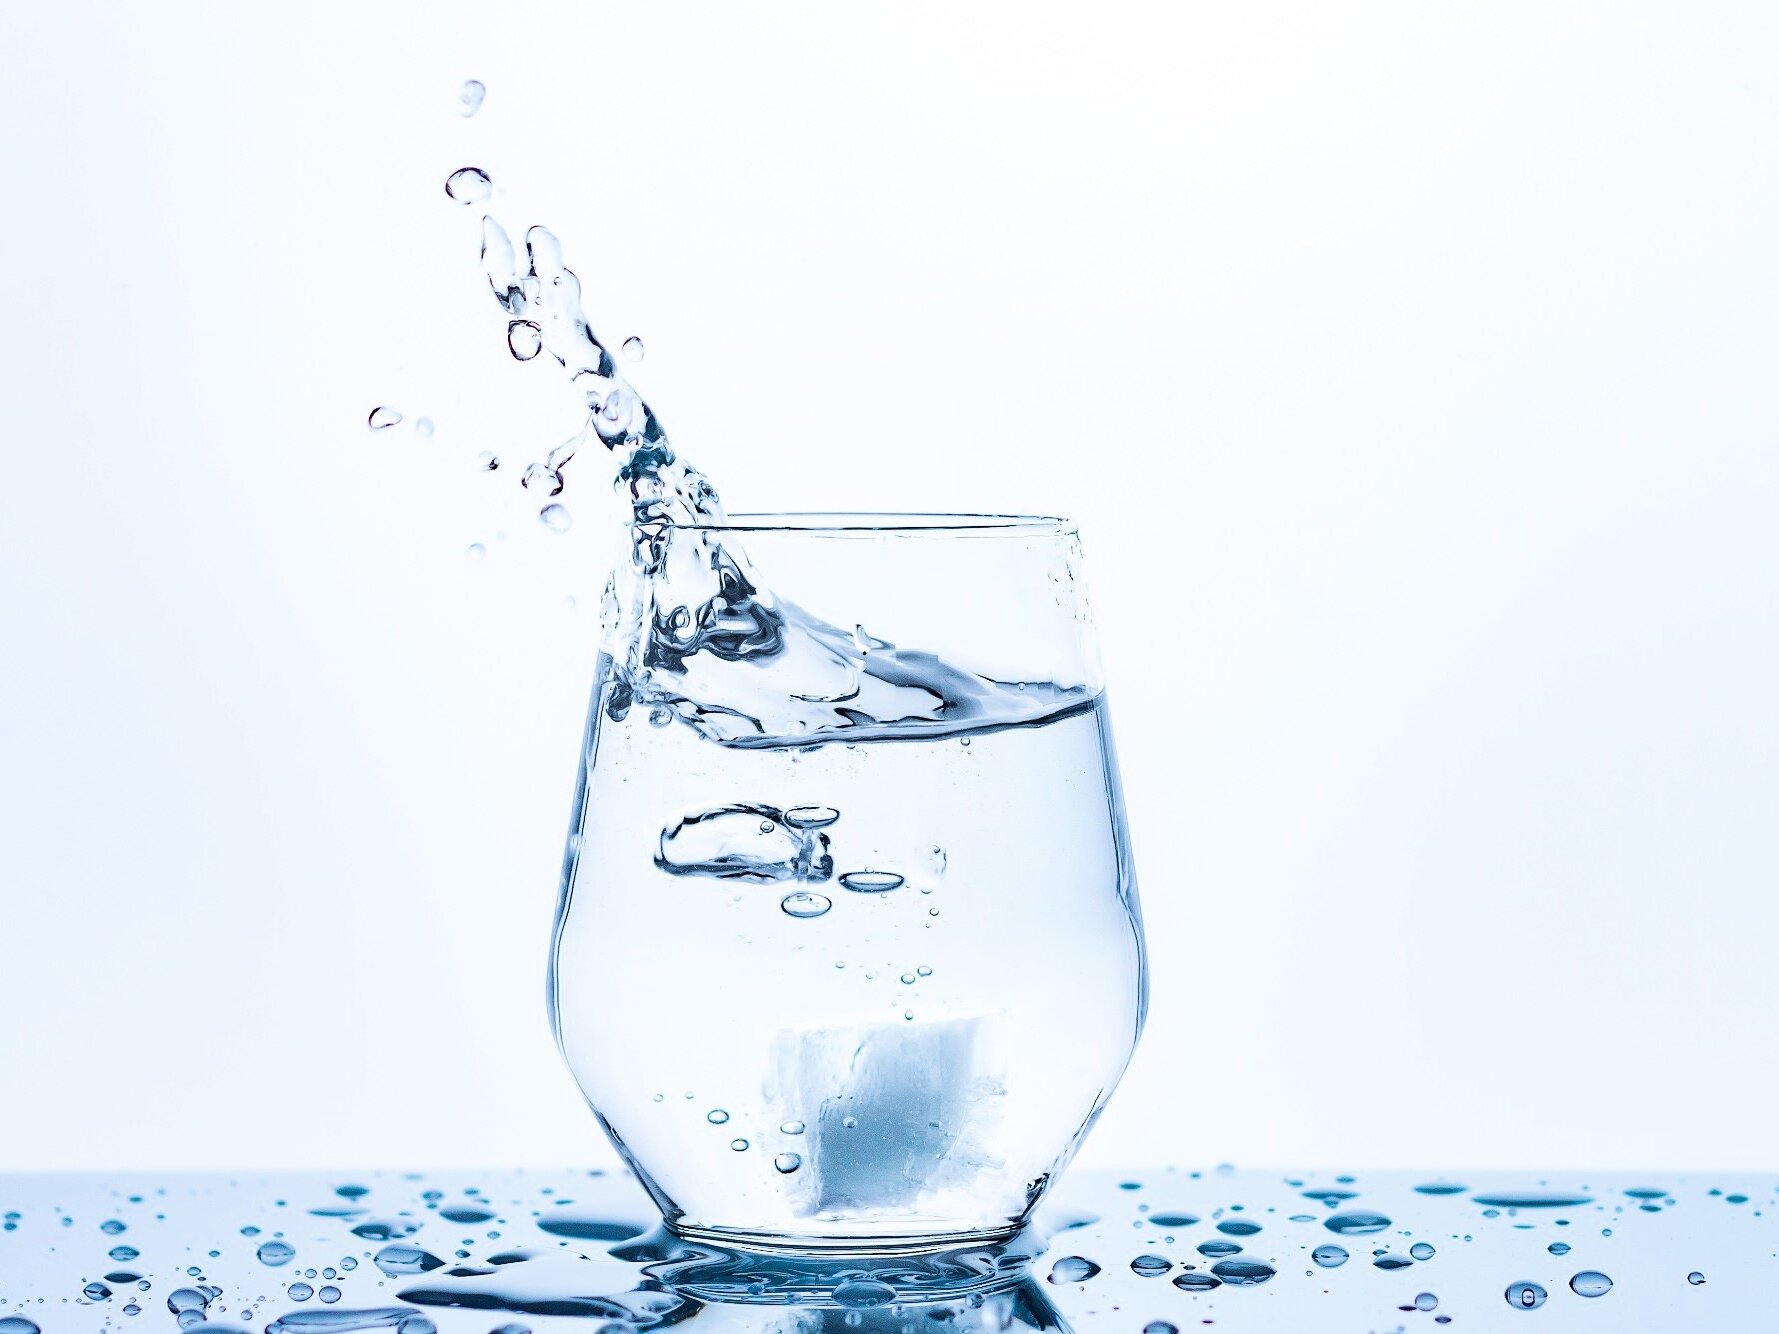 Qualità dell'acqua a Scanzorosciate, nessun rischio per la salute